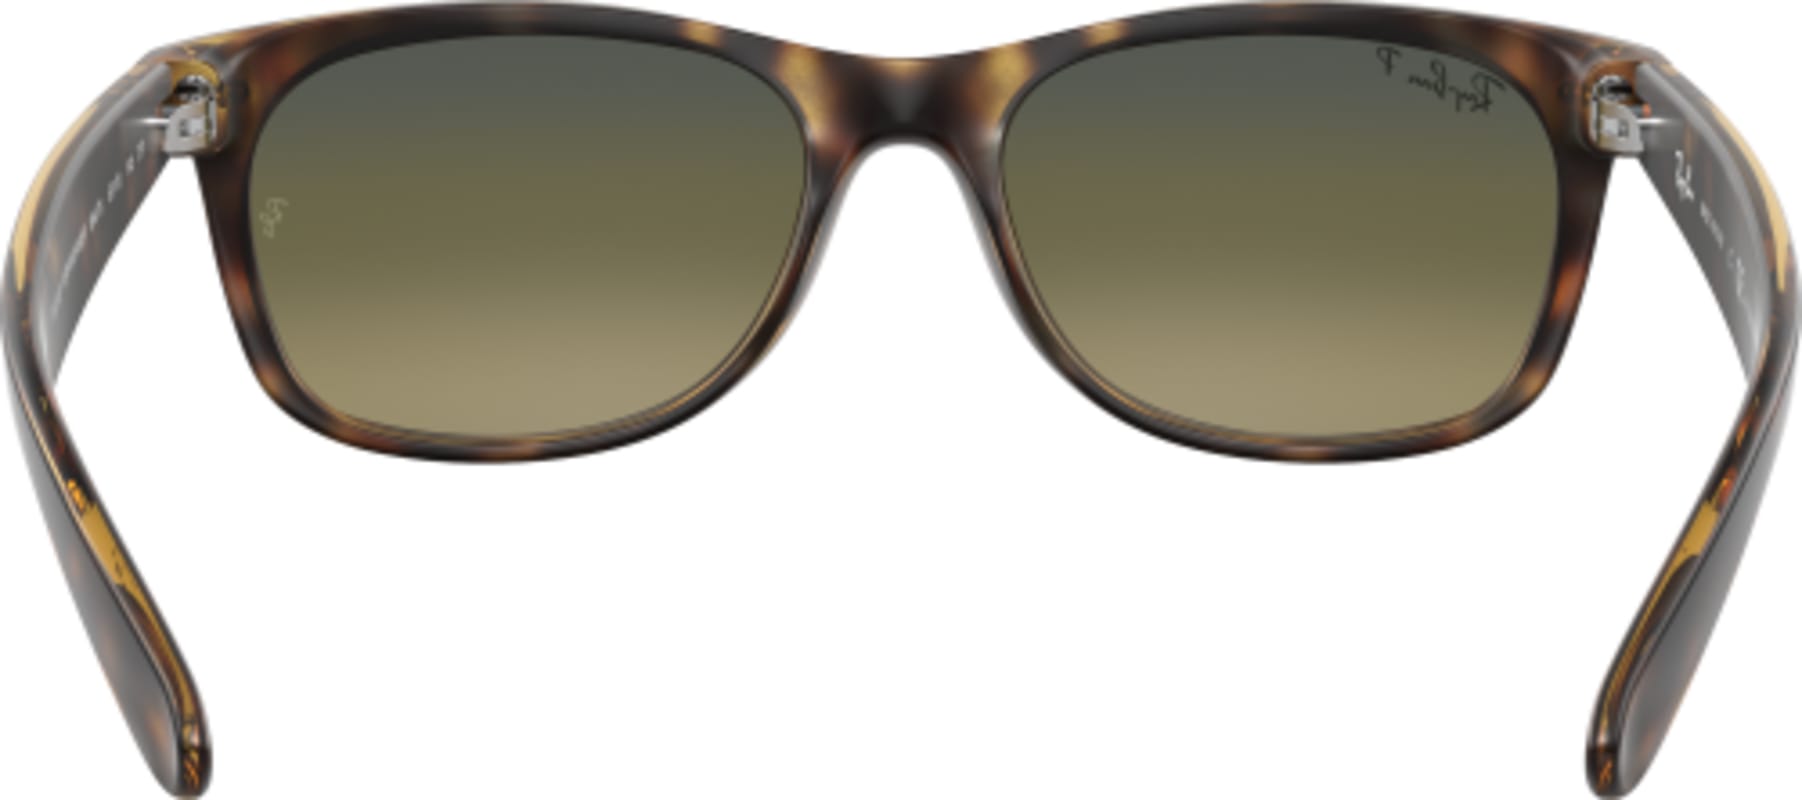 New Polarized Wayfarer Sunglasses 